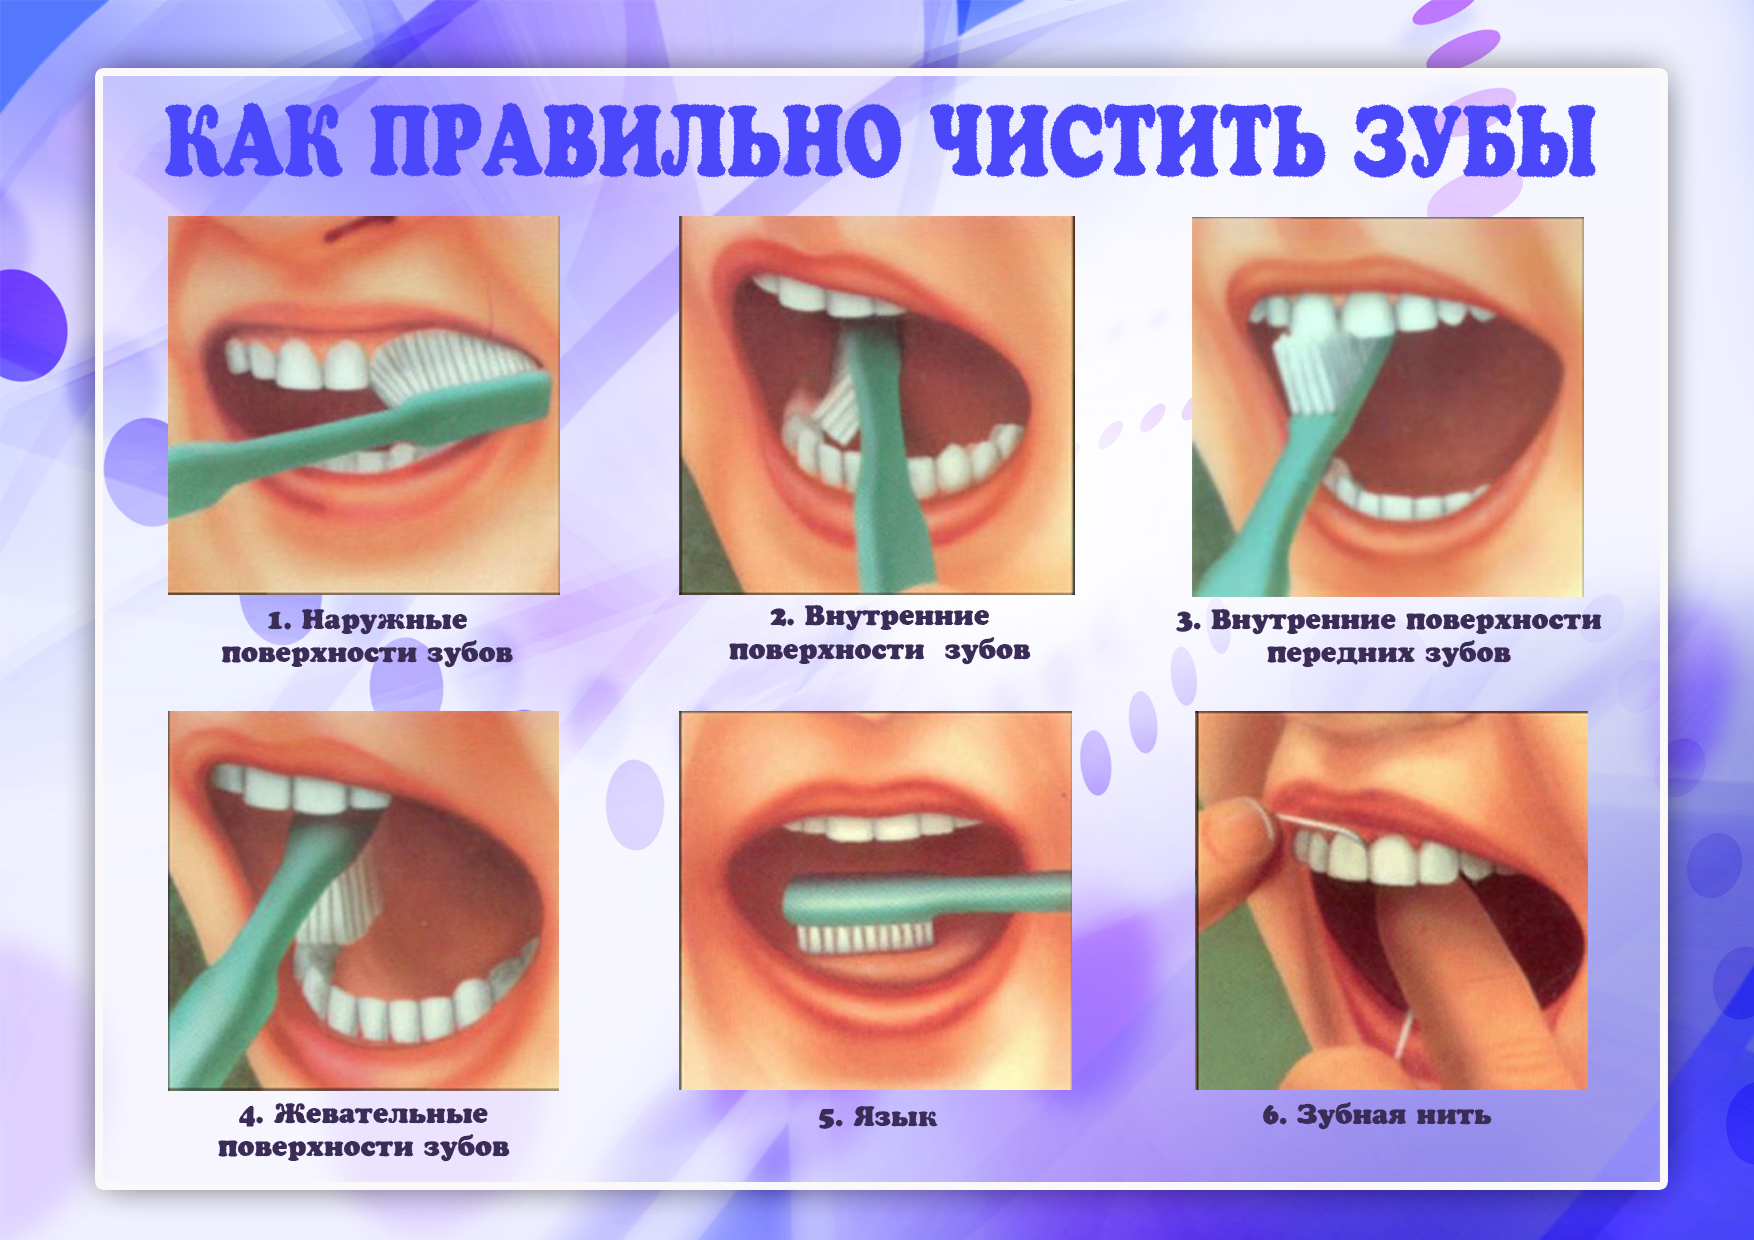 Плюсы чистки зубов. Как правильно чистить зубы. КВК правильно чистить зубы. Как правиночиститт зубы. Алгоритм чистки зубов.